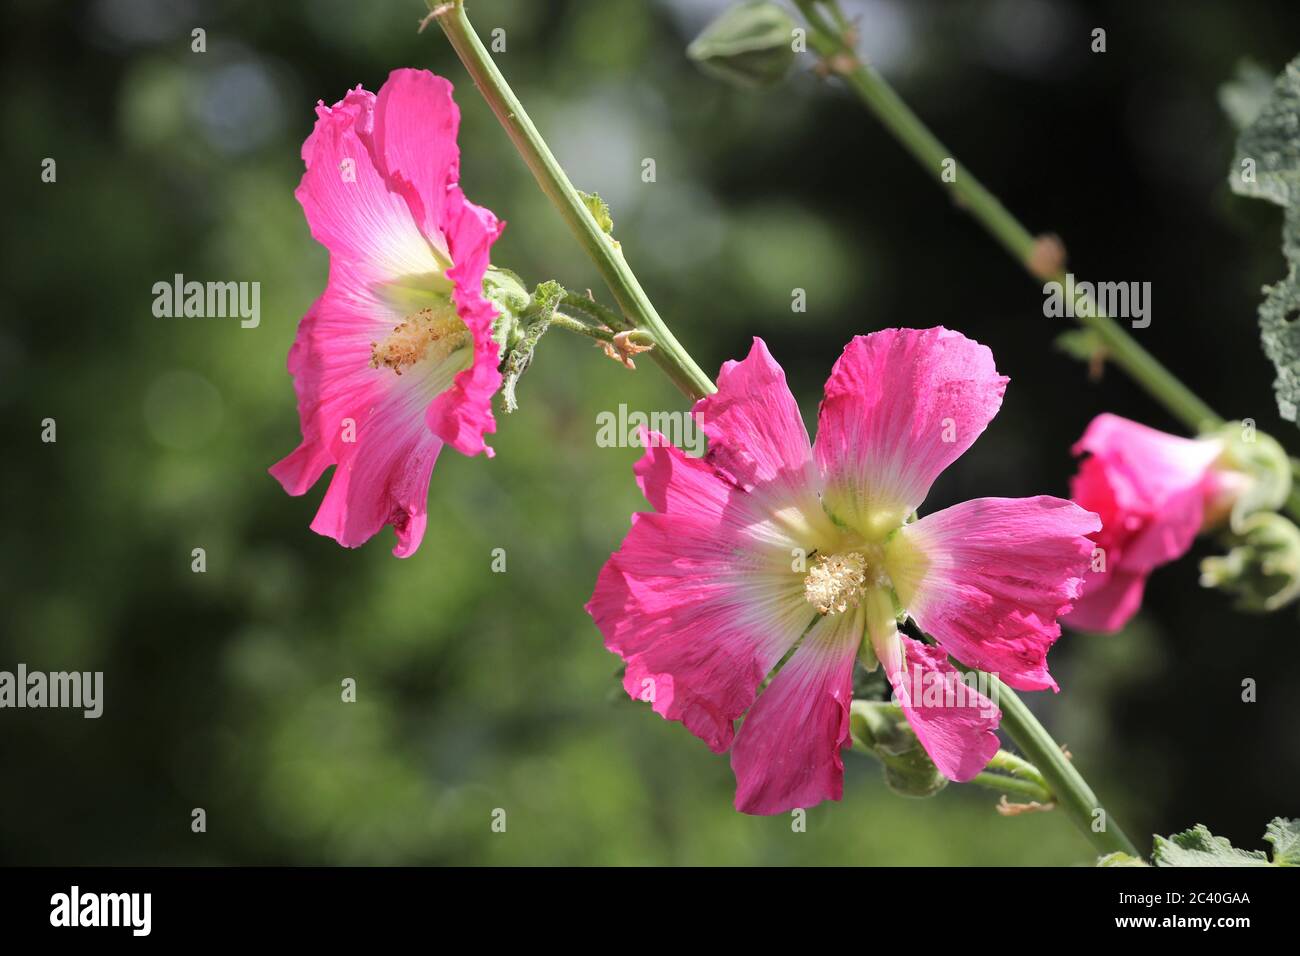 La flor de la Althaea officinalis es una planta útil para la salud humana. Foto de plantas medicinales y flores de malvavisco. Foto de stock